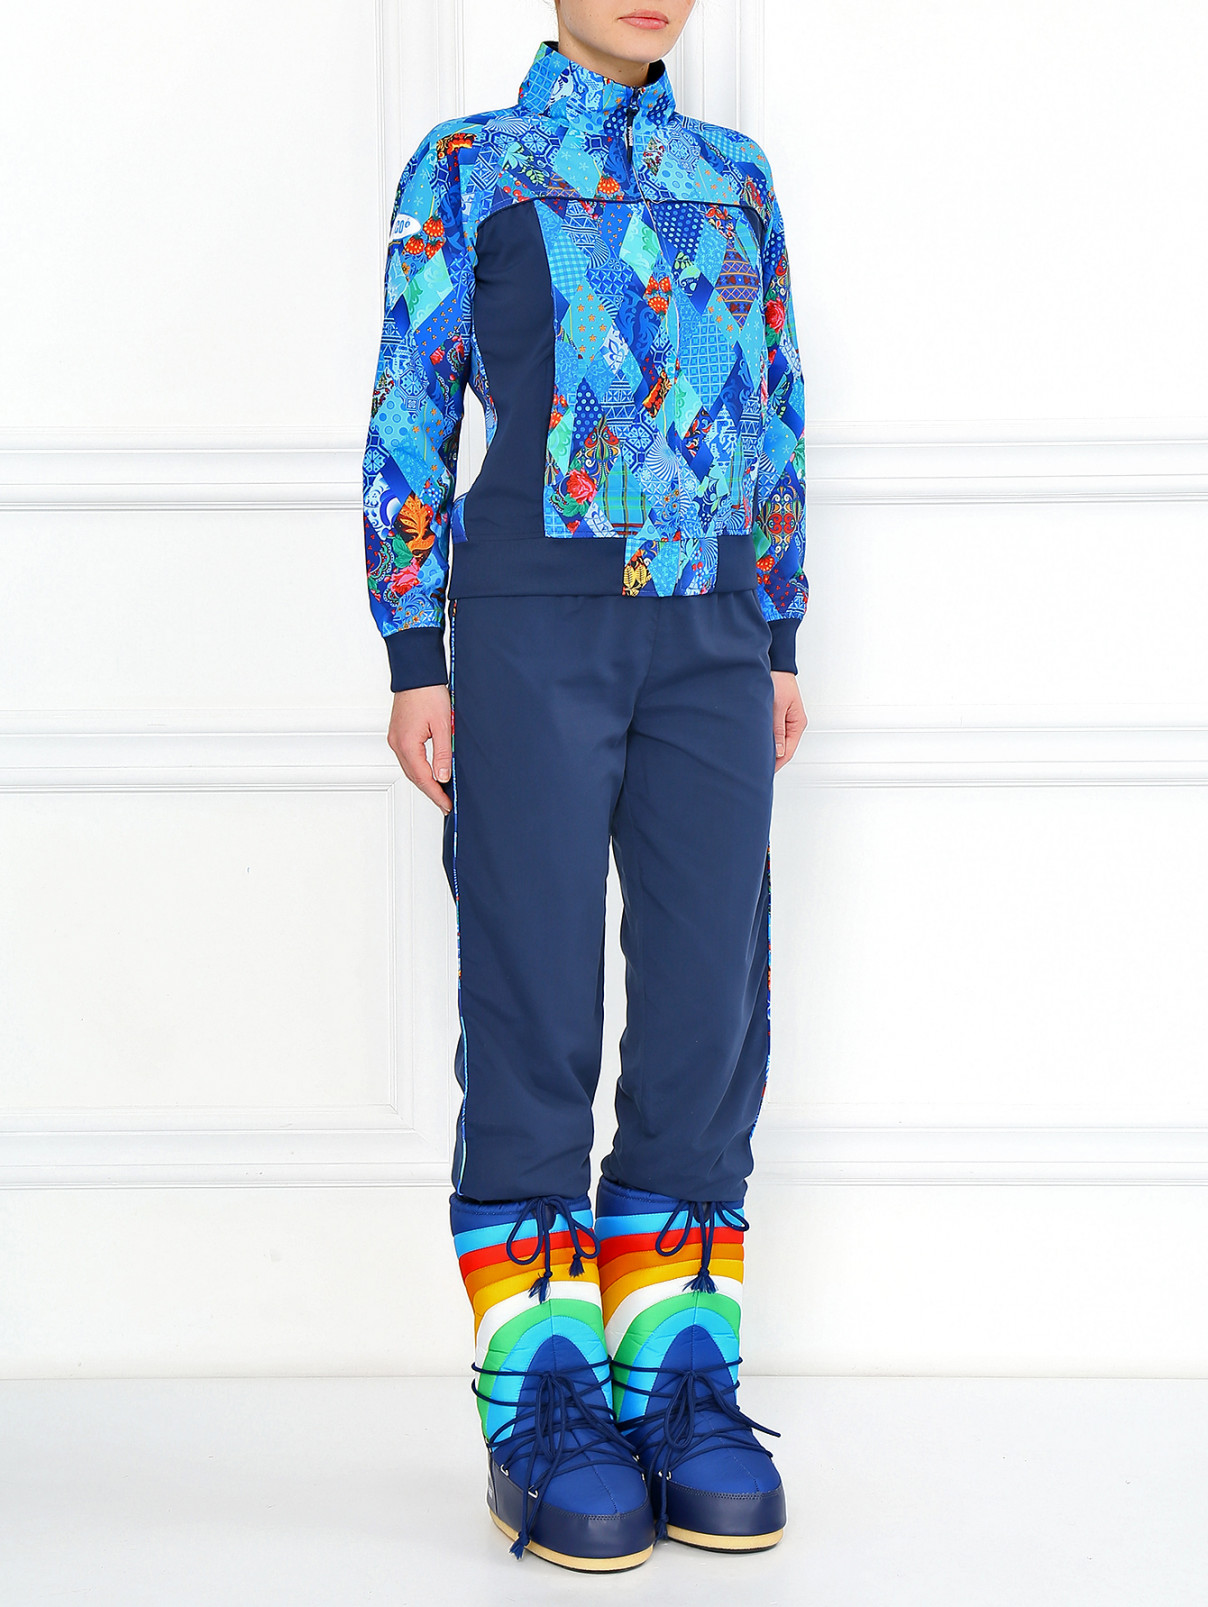 Ботинки-дутики Sochi 2014  –  Модель Общий вид  – Цвет:  Синий